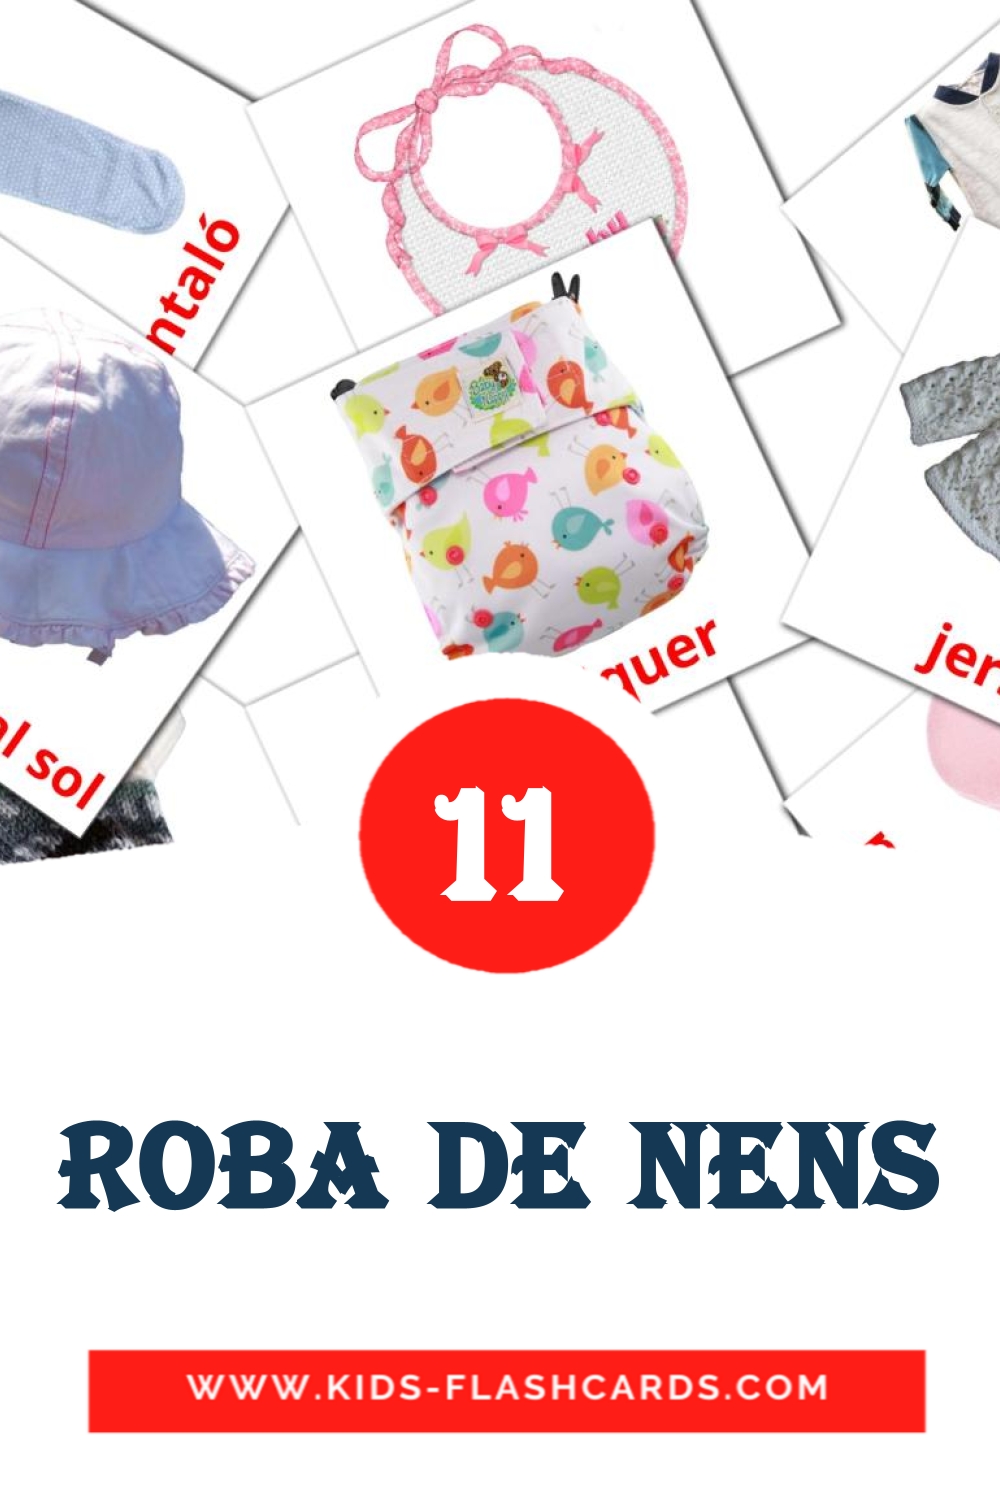 Roba de nens на каталонском для Детского Сада (11 карточек)